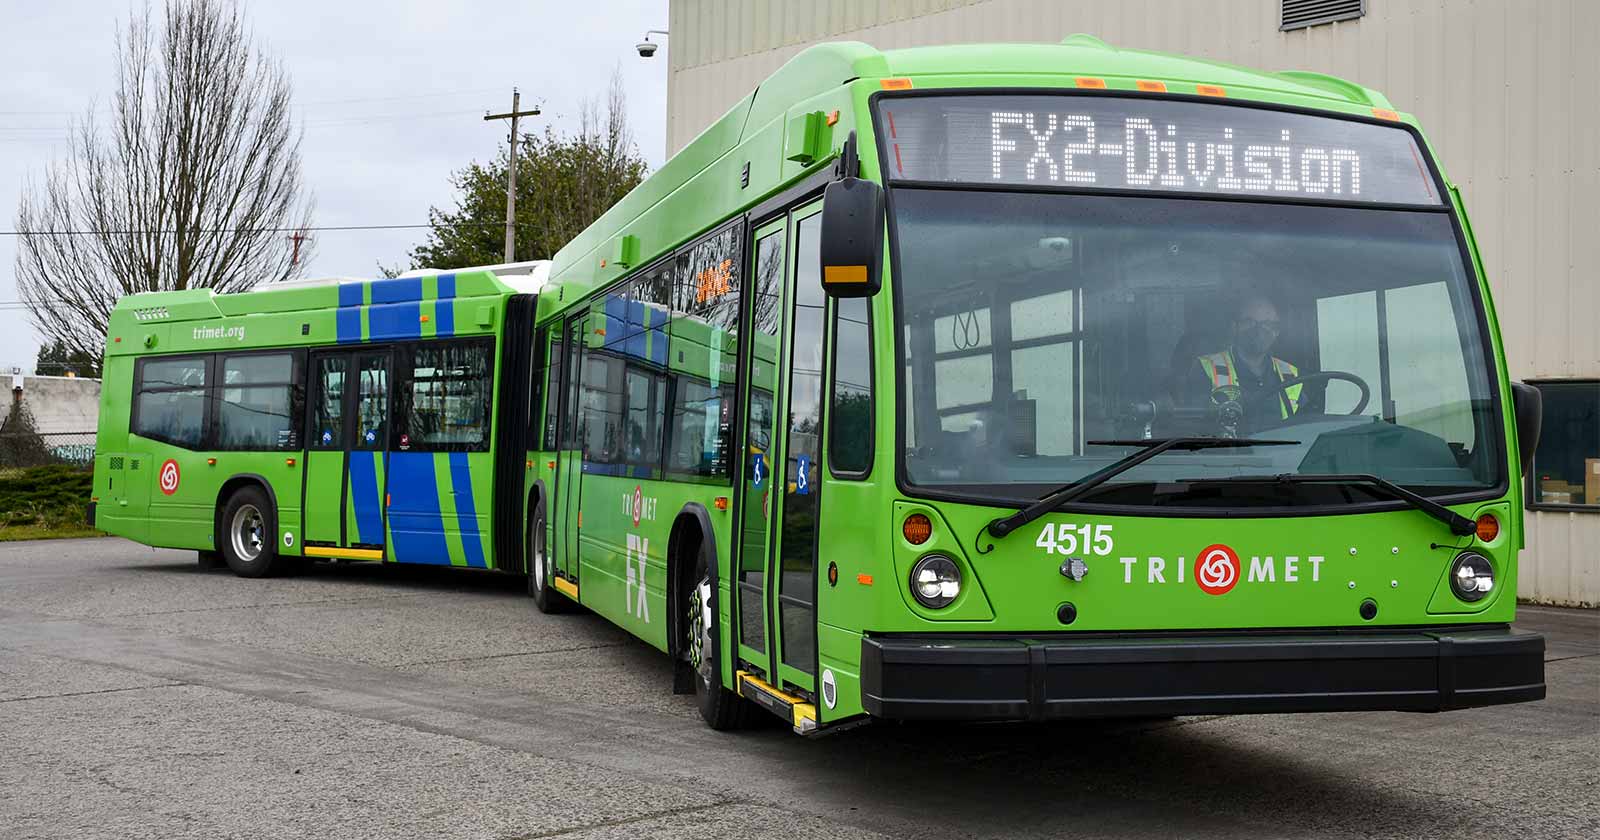 FX 2-Division bus